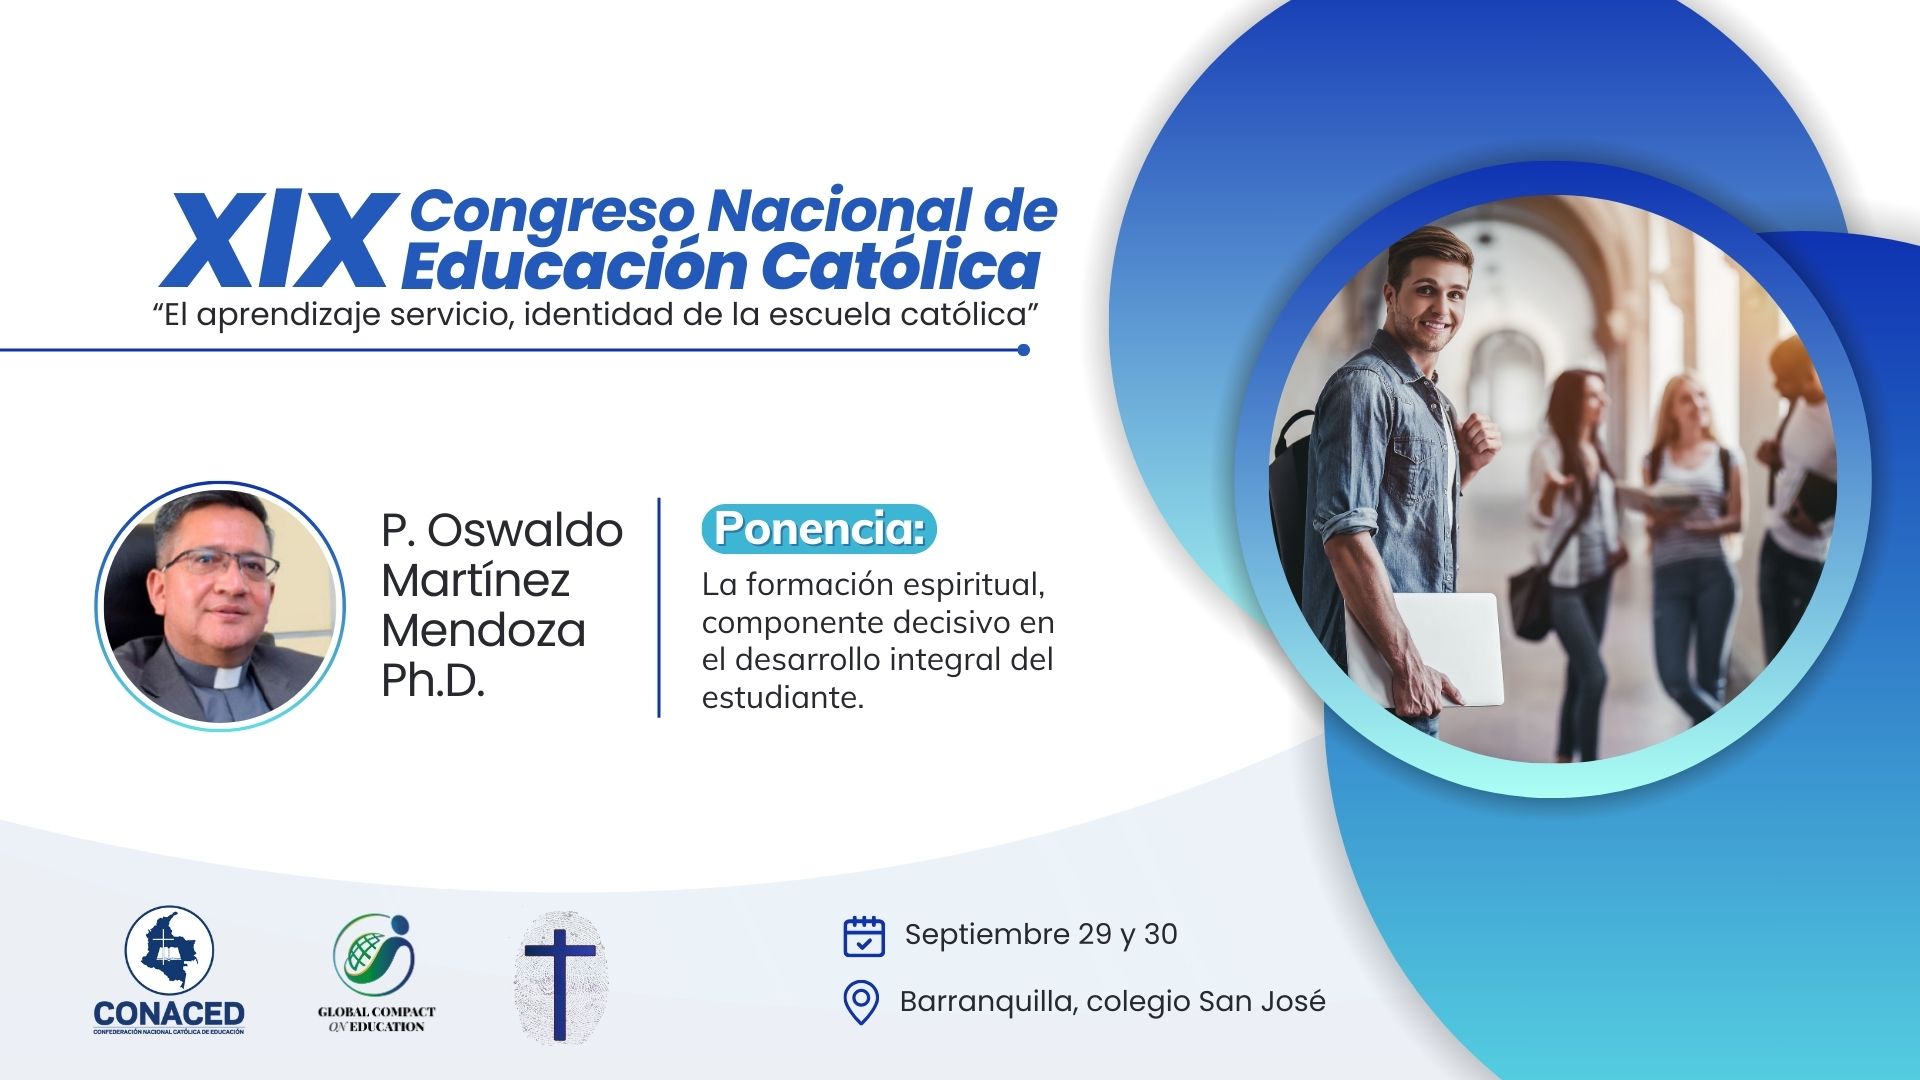 La Juan estará presente en el XIX Congreso Nacional de Educación Católica 